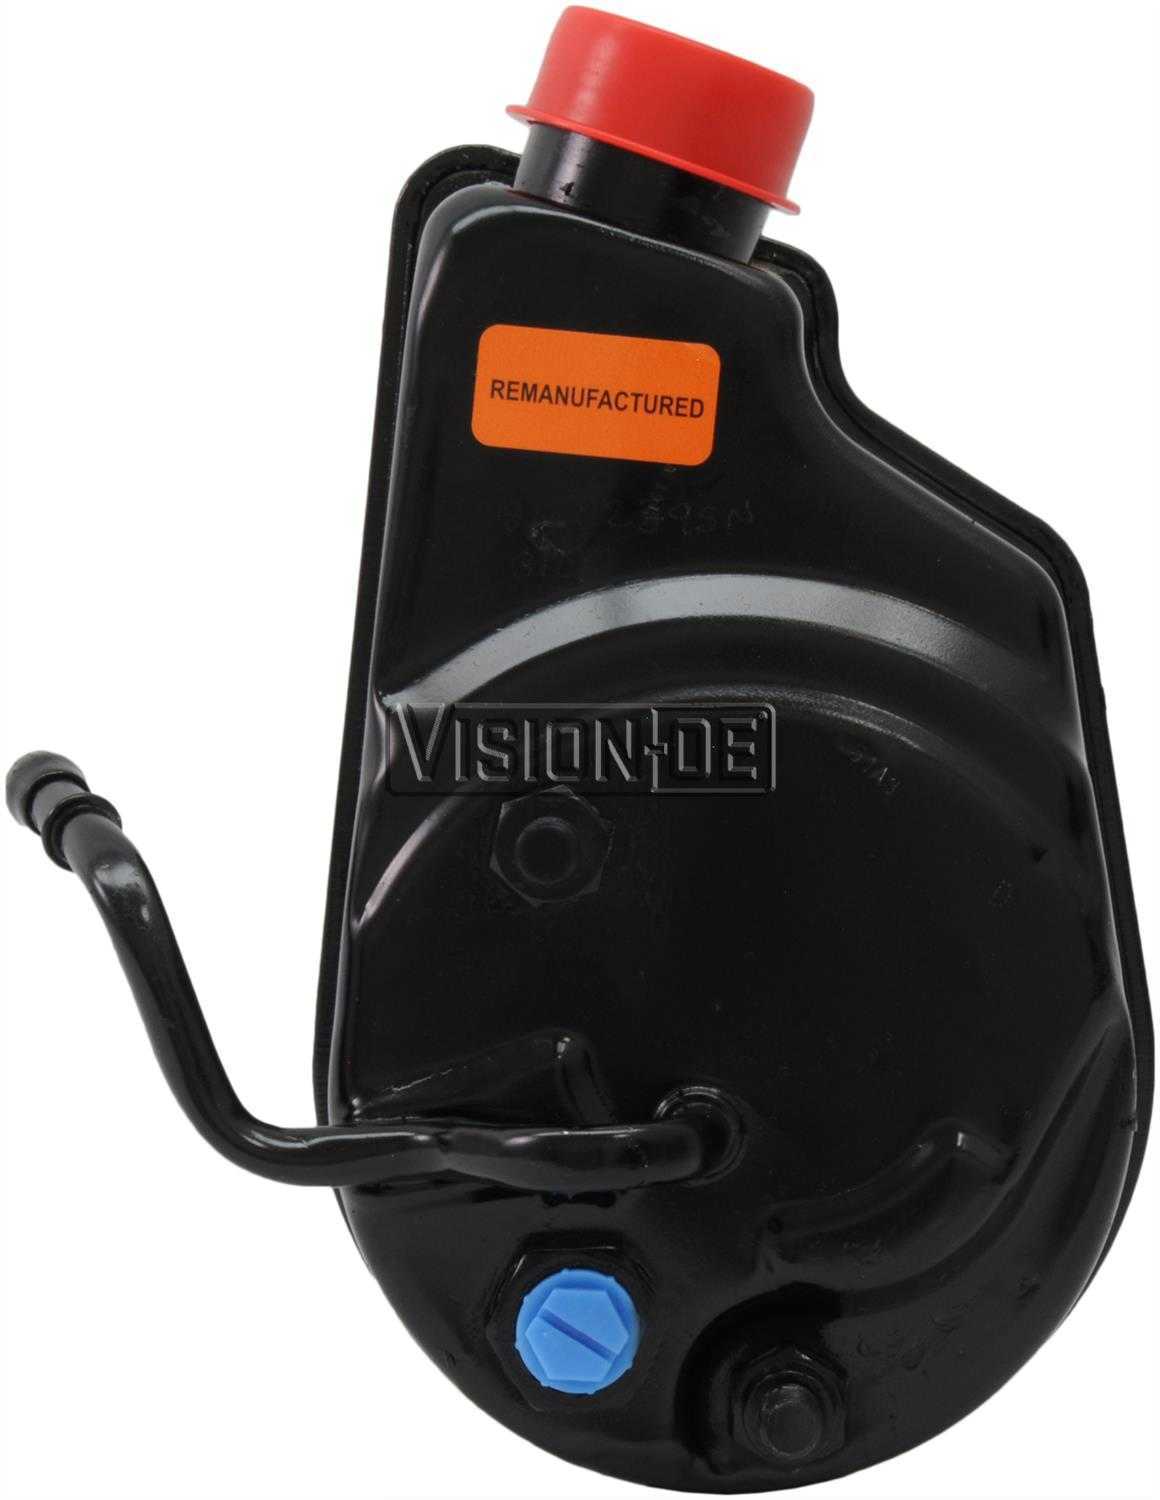 VISION-OE - Reman Power Steering Pump - VOE 731-2221